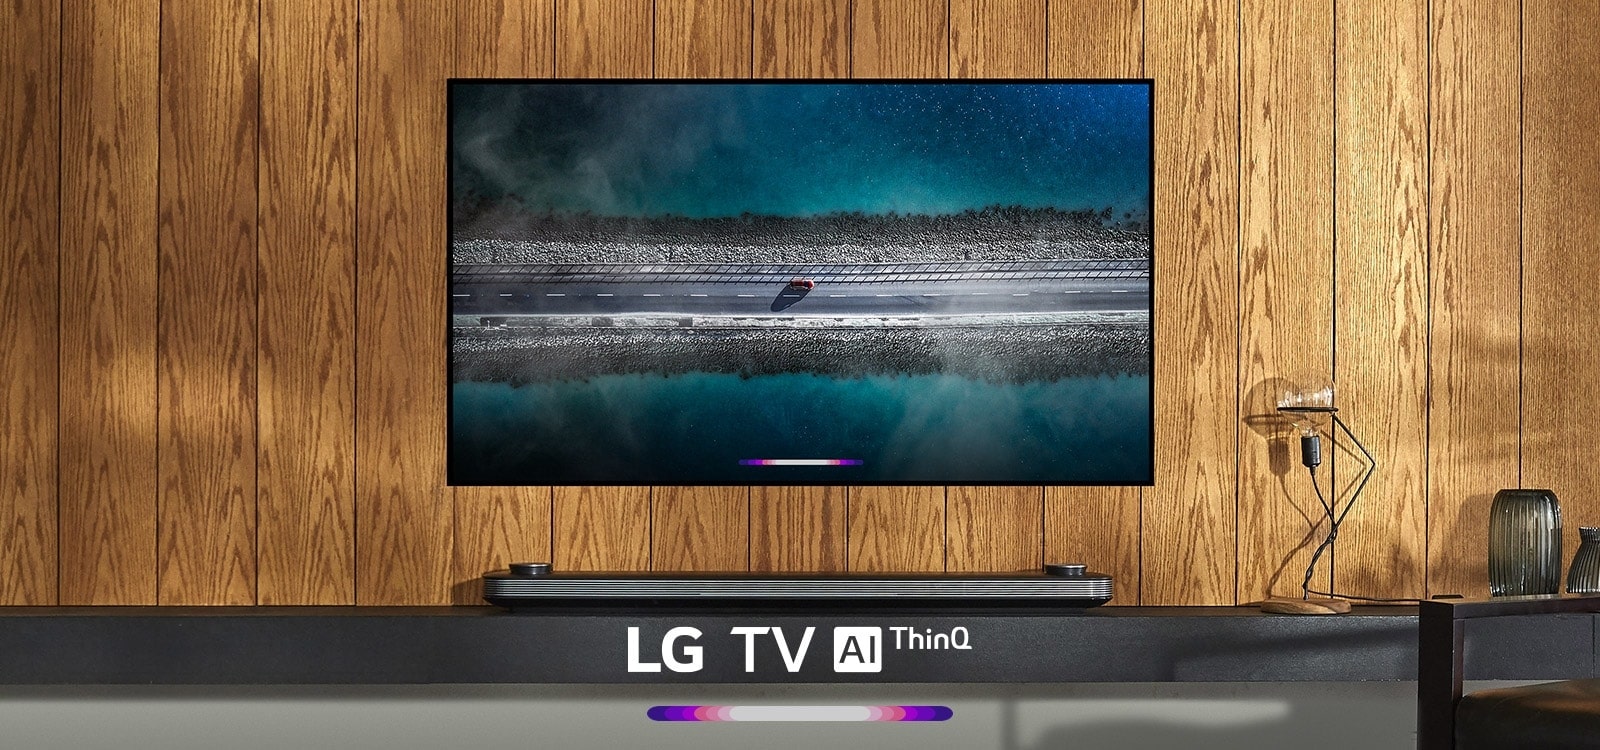 Die LG AI ThinQ Funktion wird vor einem LG TV in einem stylischen Wohnzimmer gezeigt.